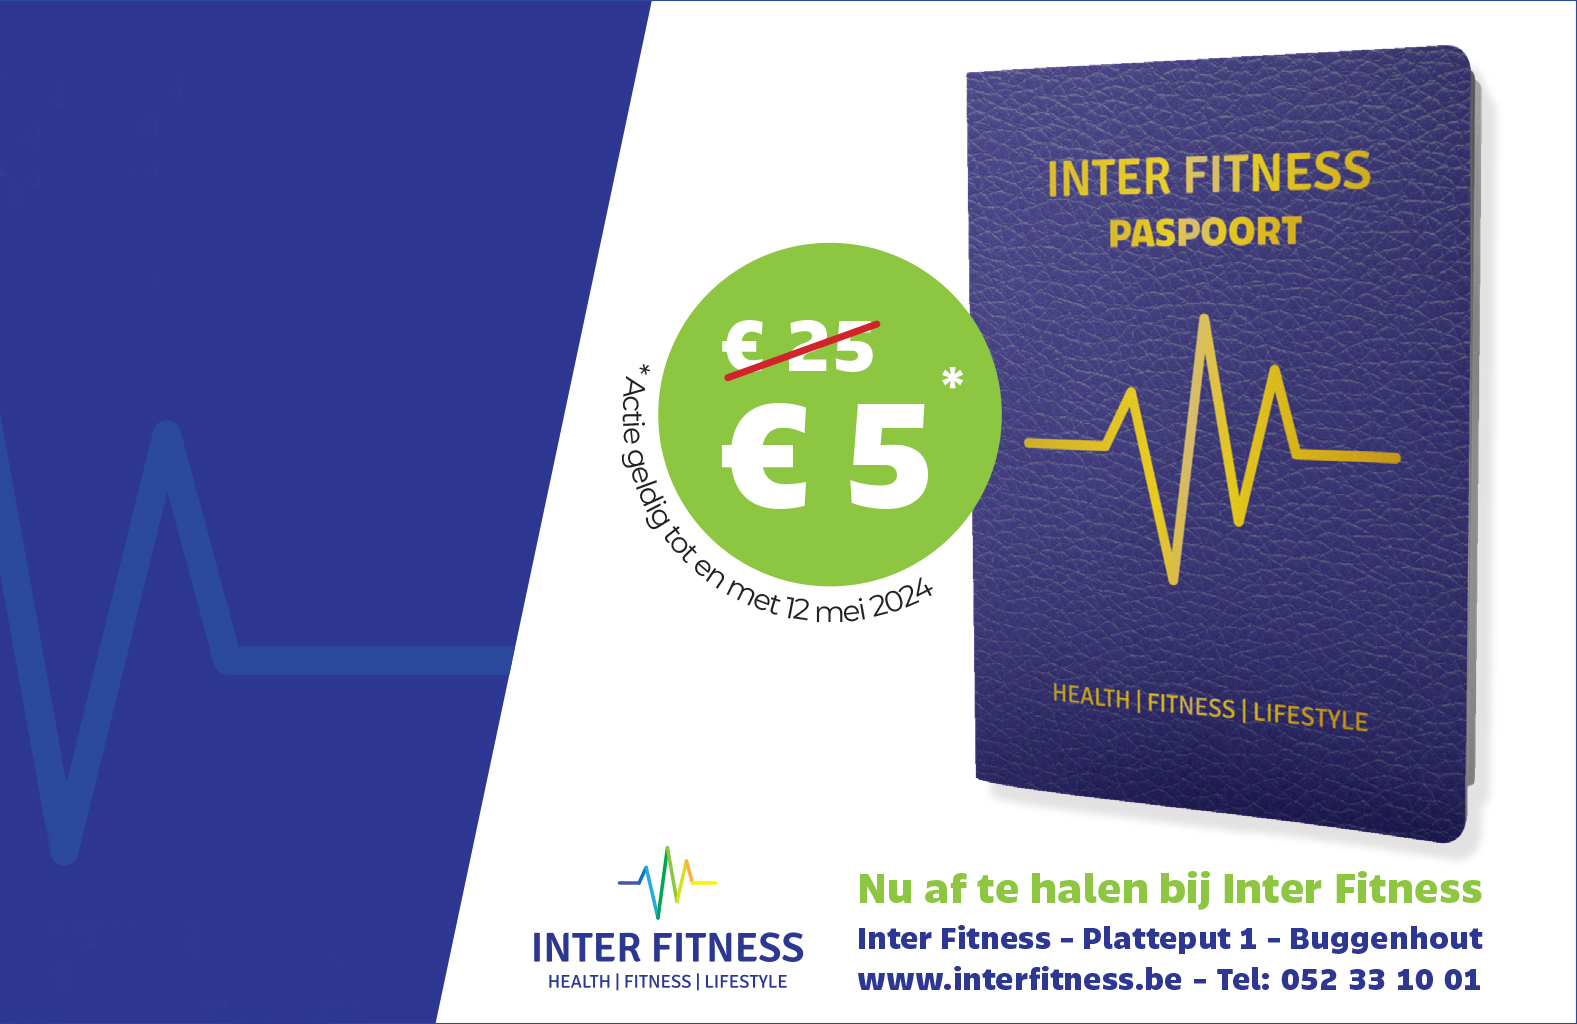 Inter Fitness Paspoort